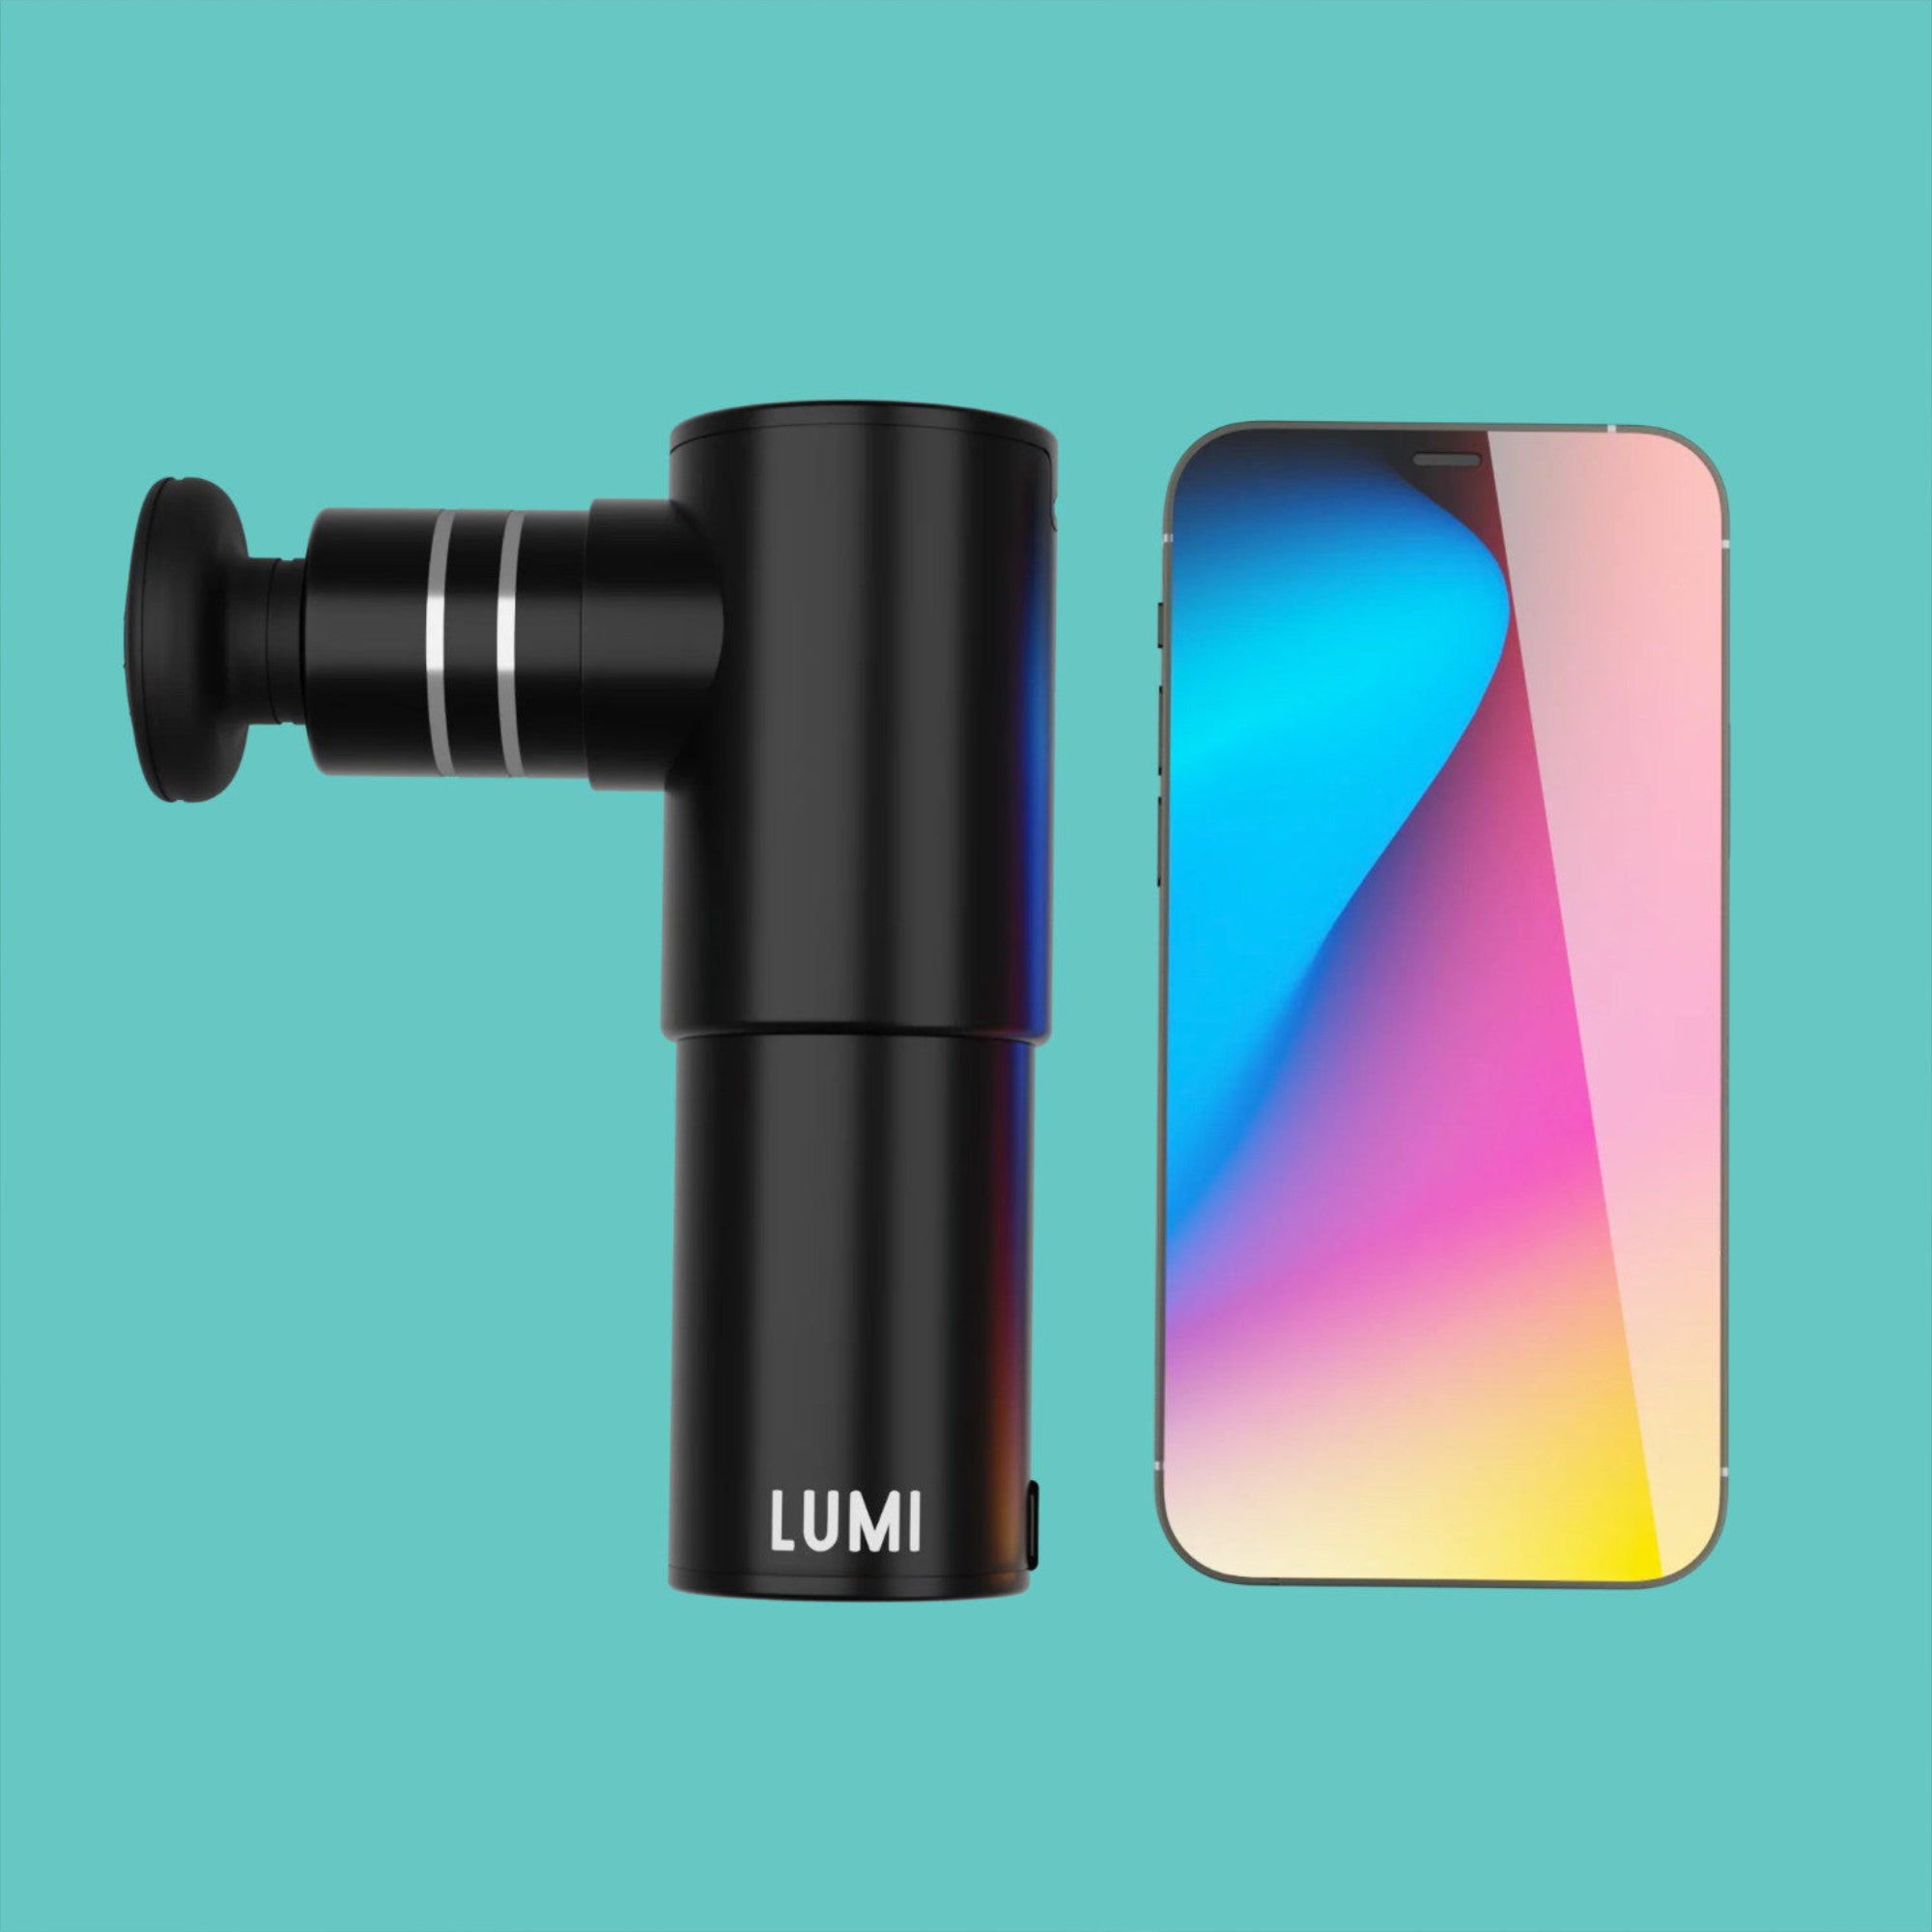 Lumi miniPro massage gun next to iPhone